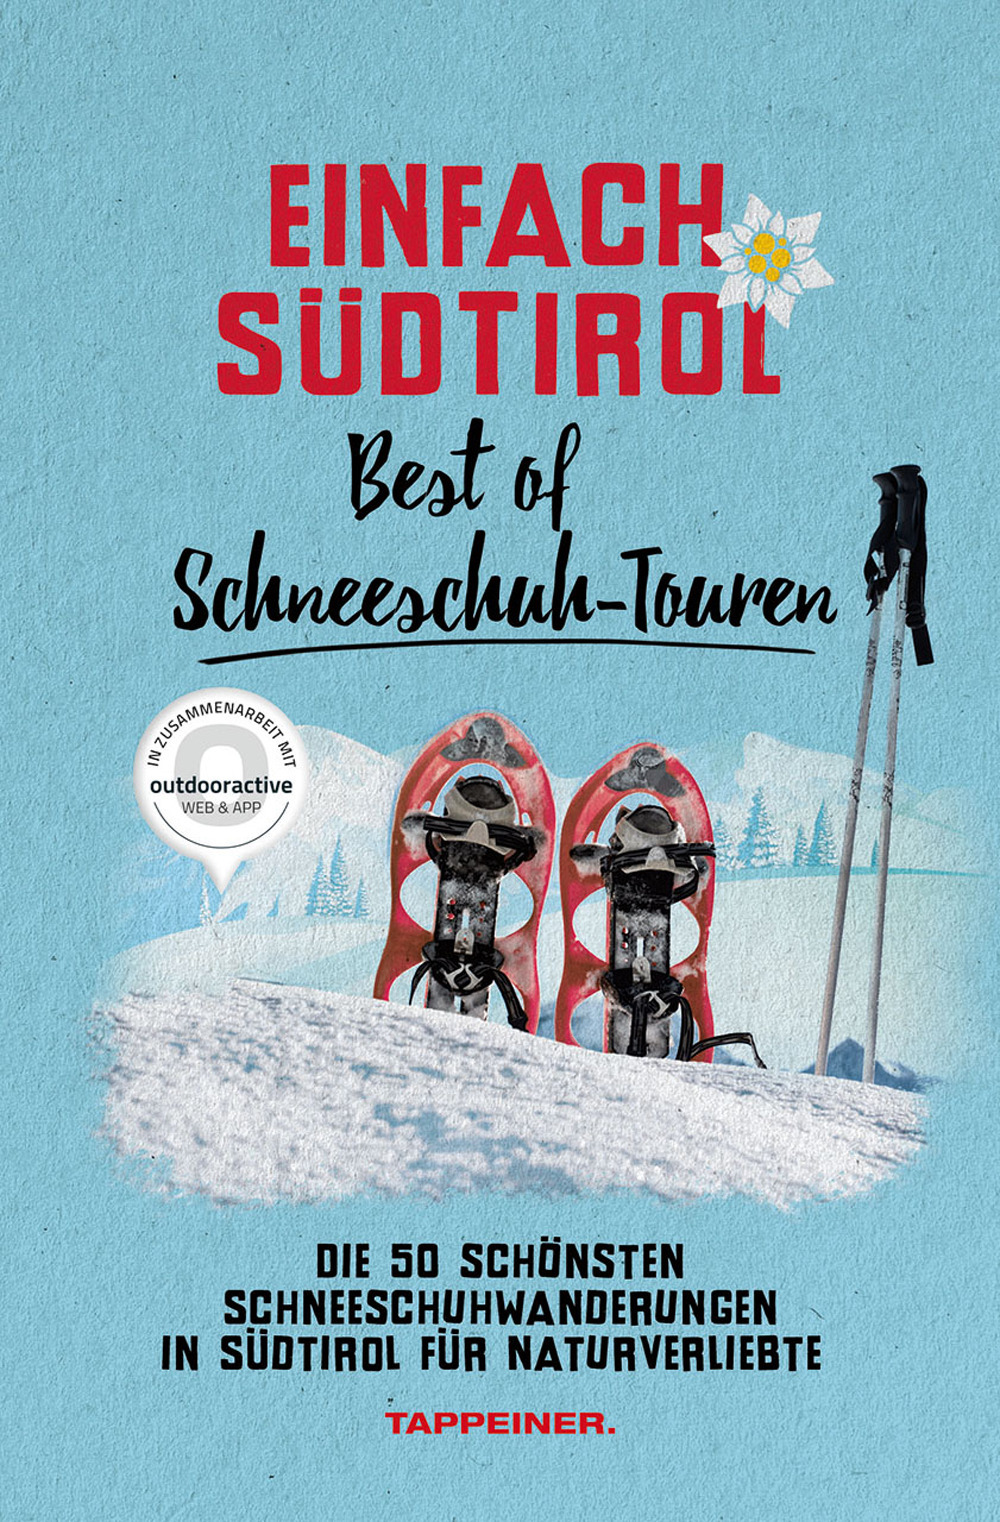 Einfach Südtirol: best of Schneeschuh-Touren. Die 50 schönsten Schneeschuhwanderungen in Südtirol für Naturverliebte